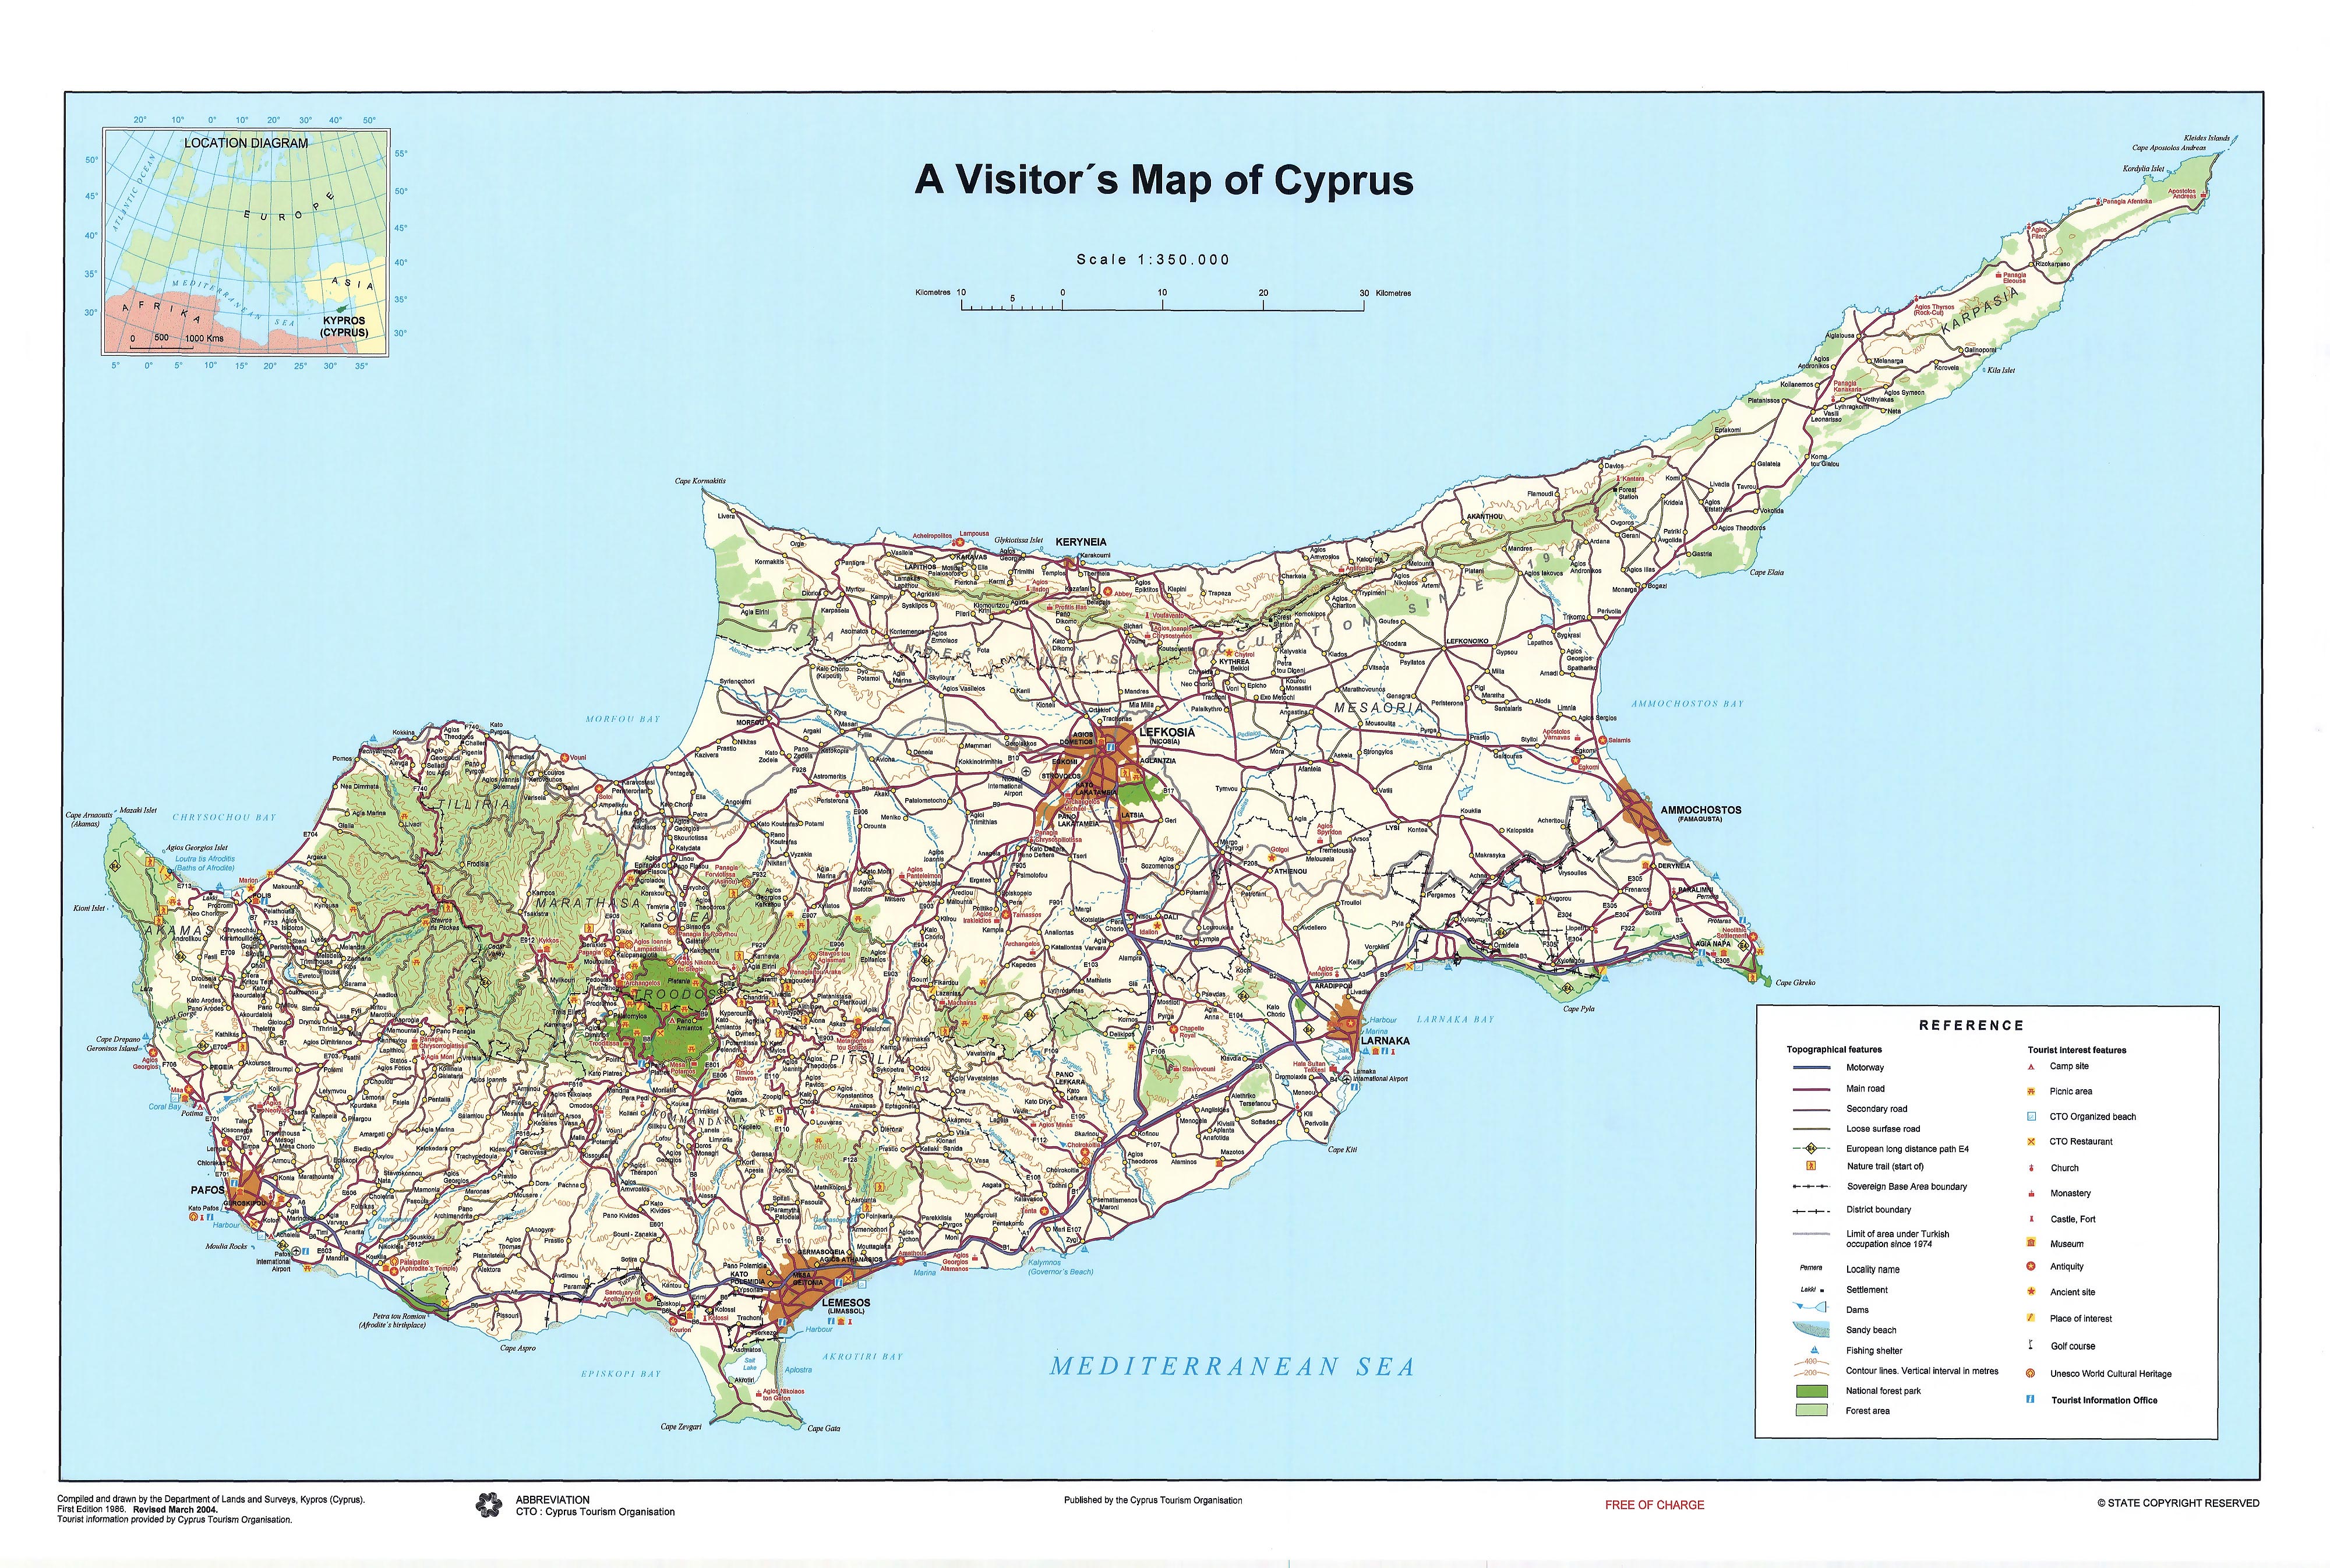 carte-de-chypre-touristique